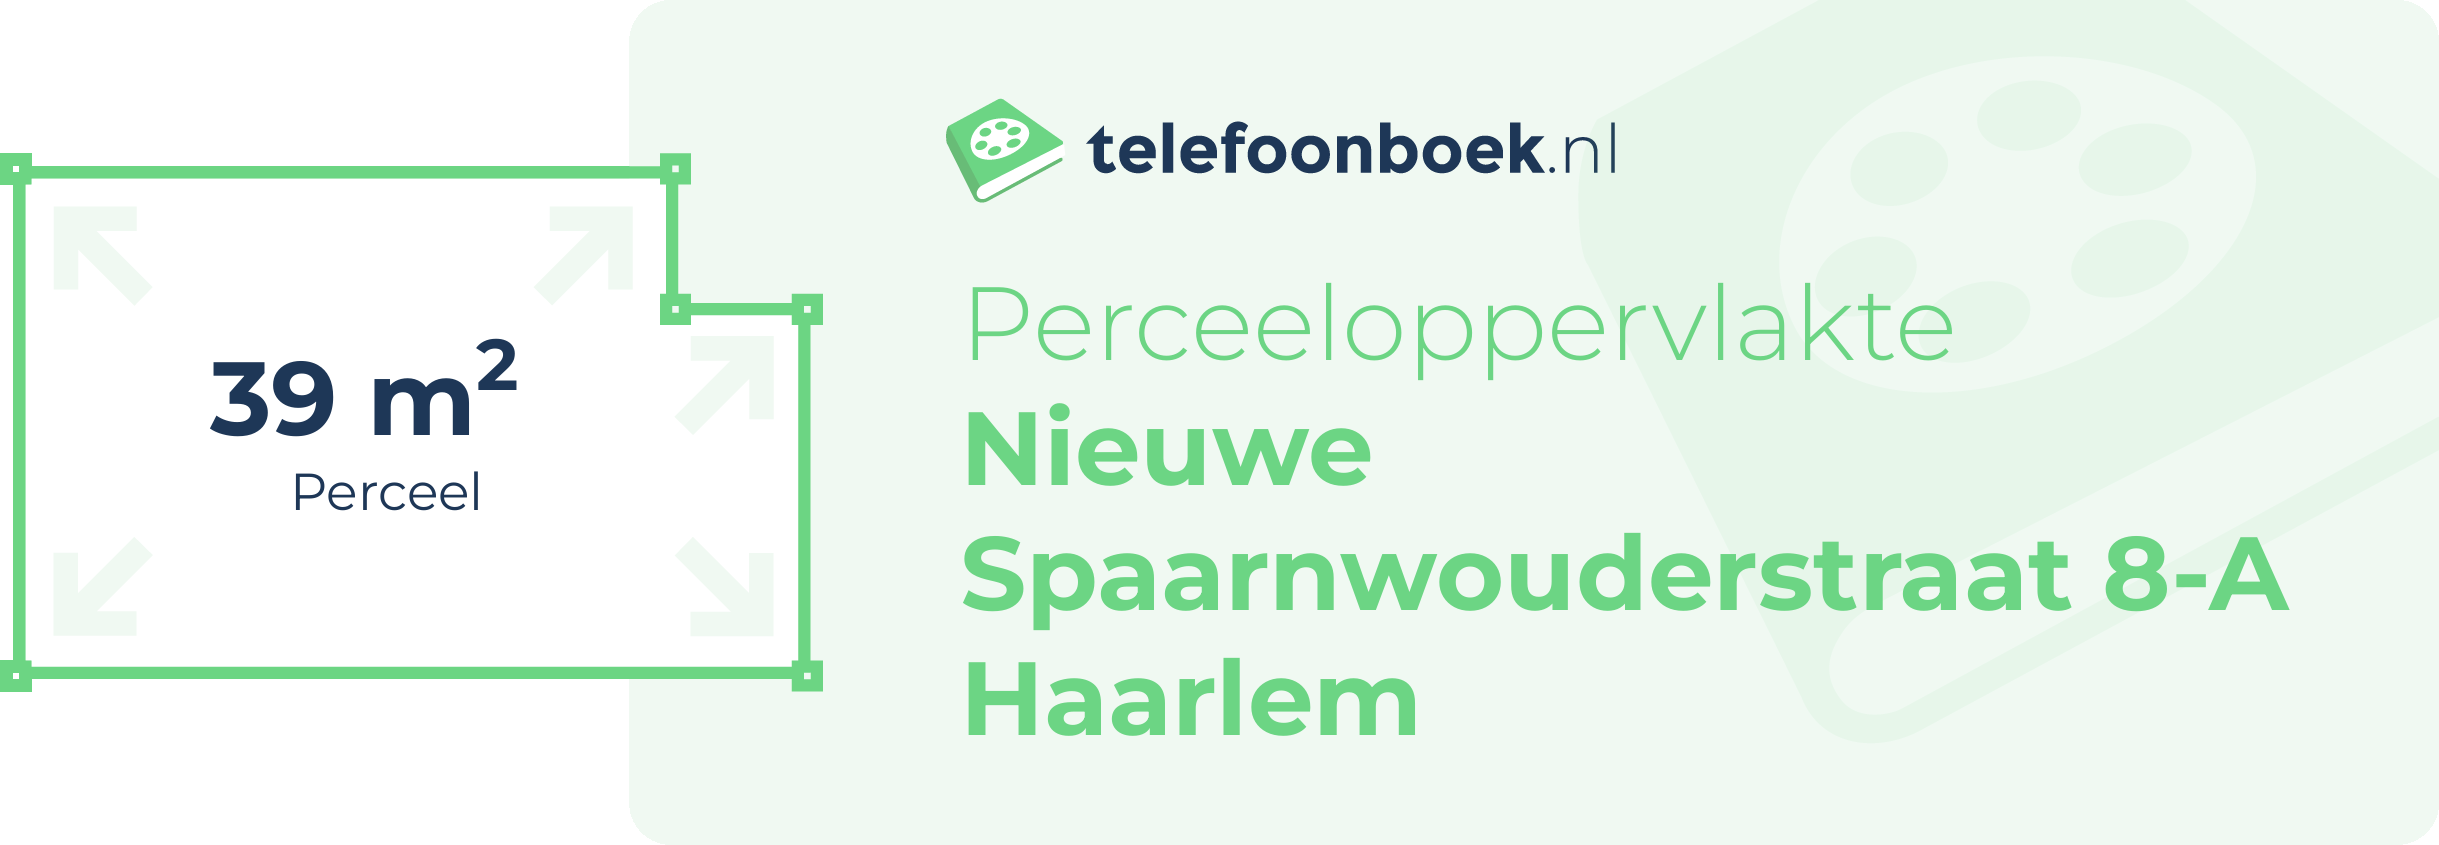 Perceeloppervlakte Nieuwe Spaarnwouderstraat 8-A Haarlem